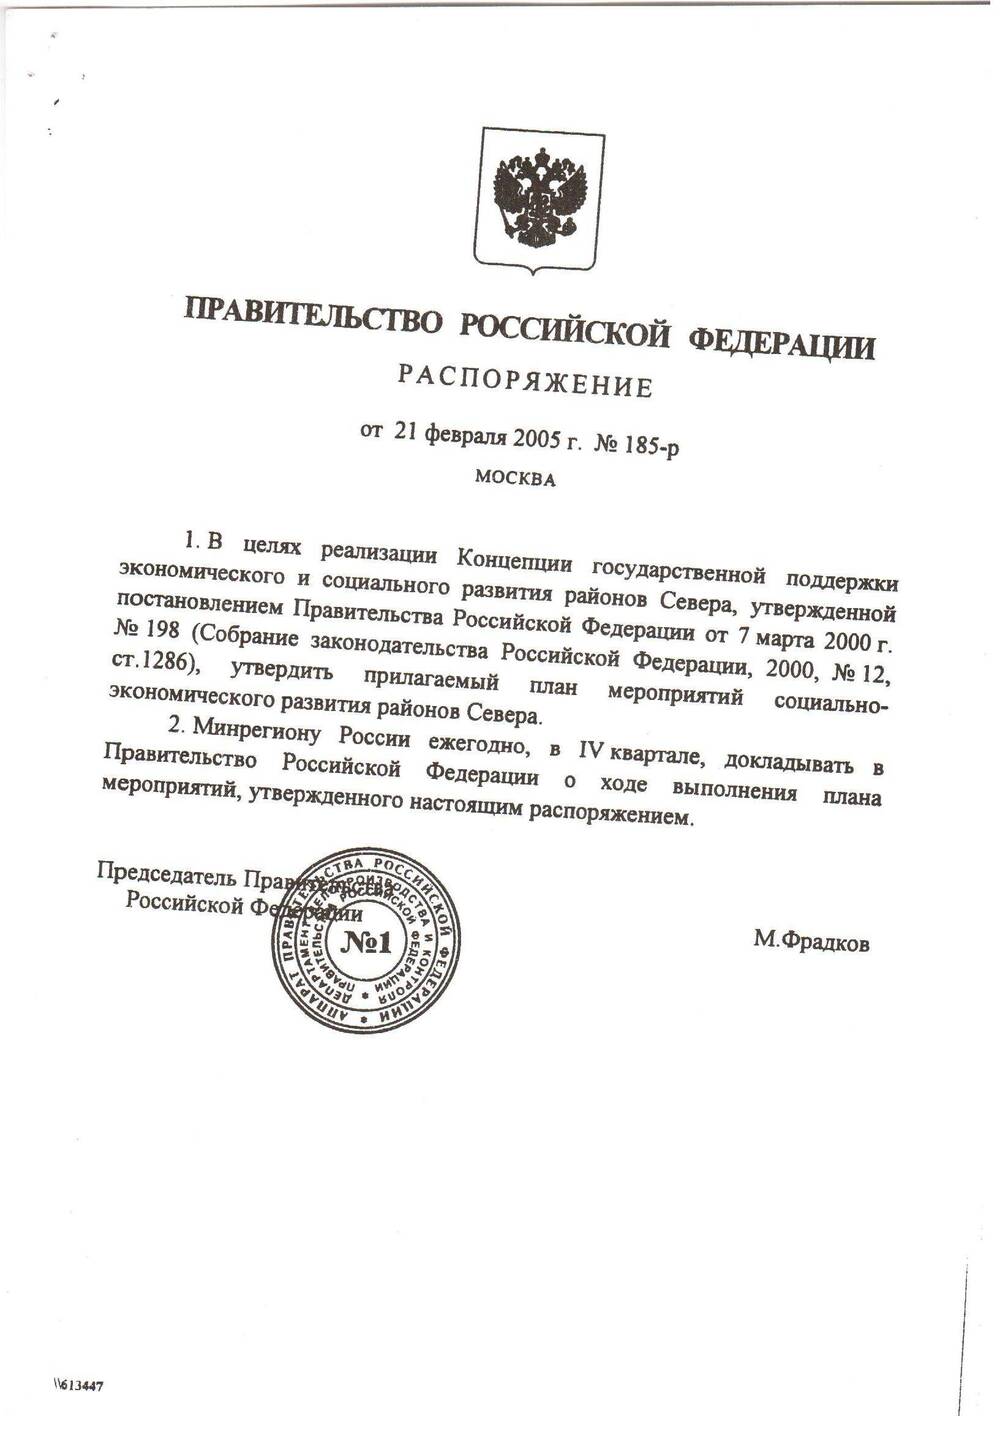 Распоряжение Правительства Российской Федерации № 115-р от 21 февраля 2005 г. (копия)